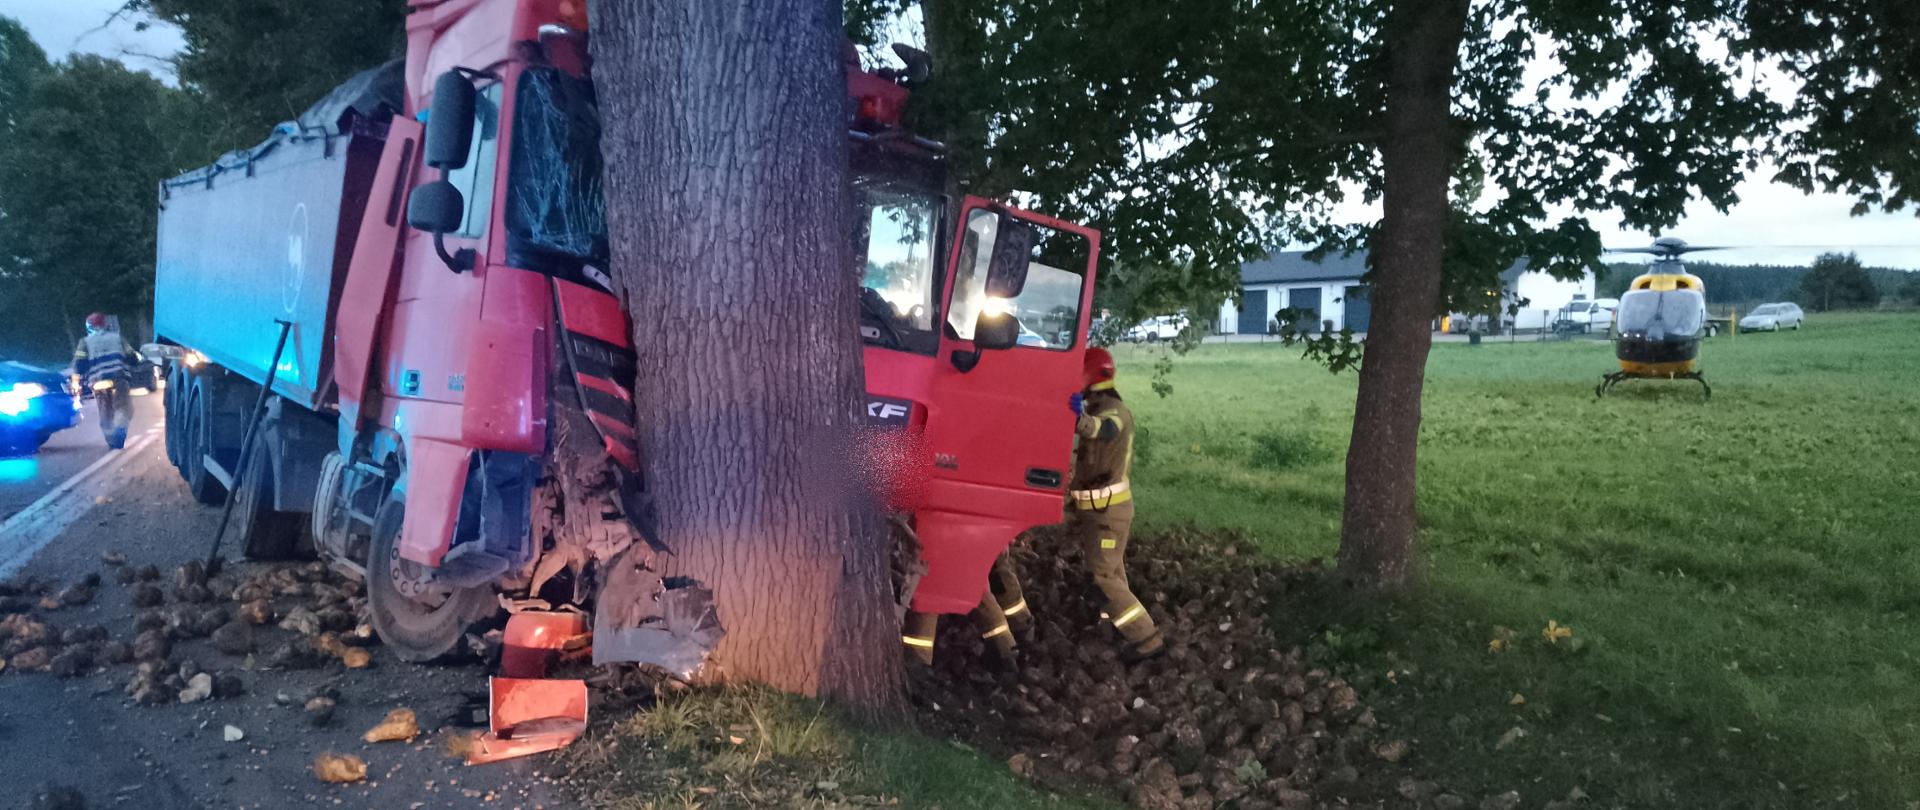 Zdjęcie przedstawia uszkodzony pojazd ciężarowy po uderzeniu w drzewo